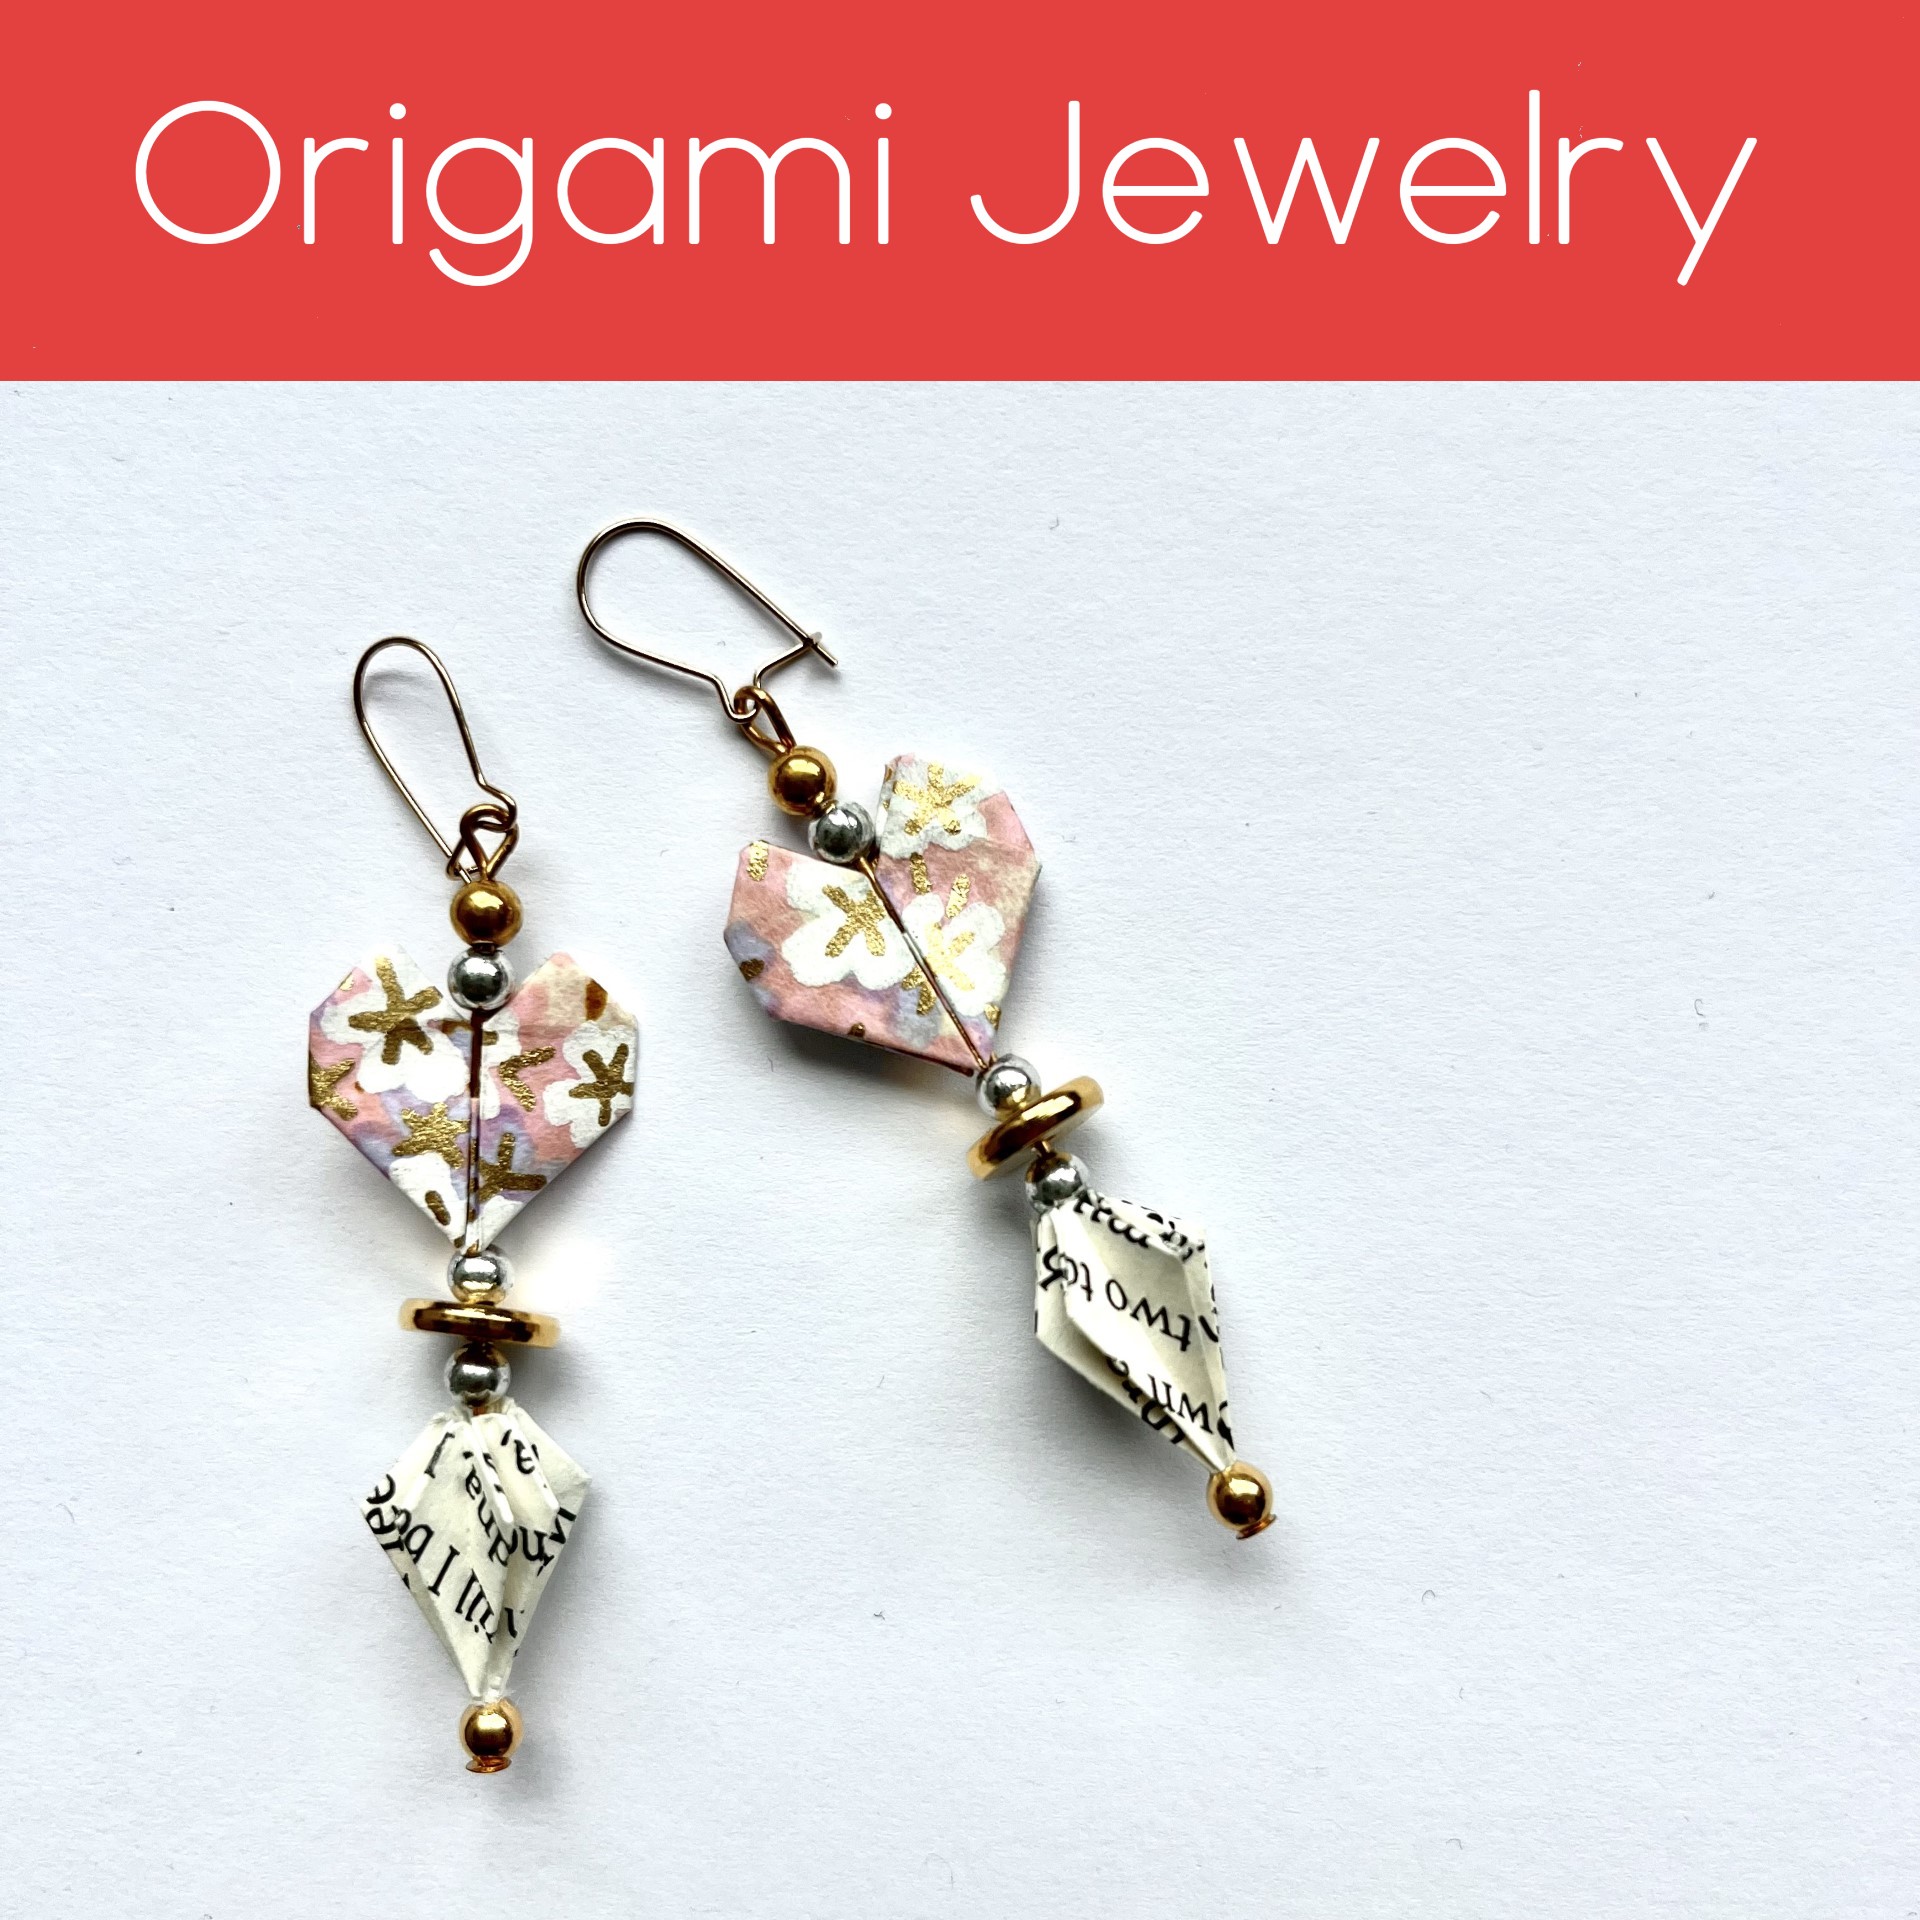 origami jewelry workshop